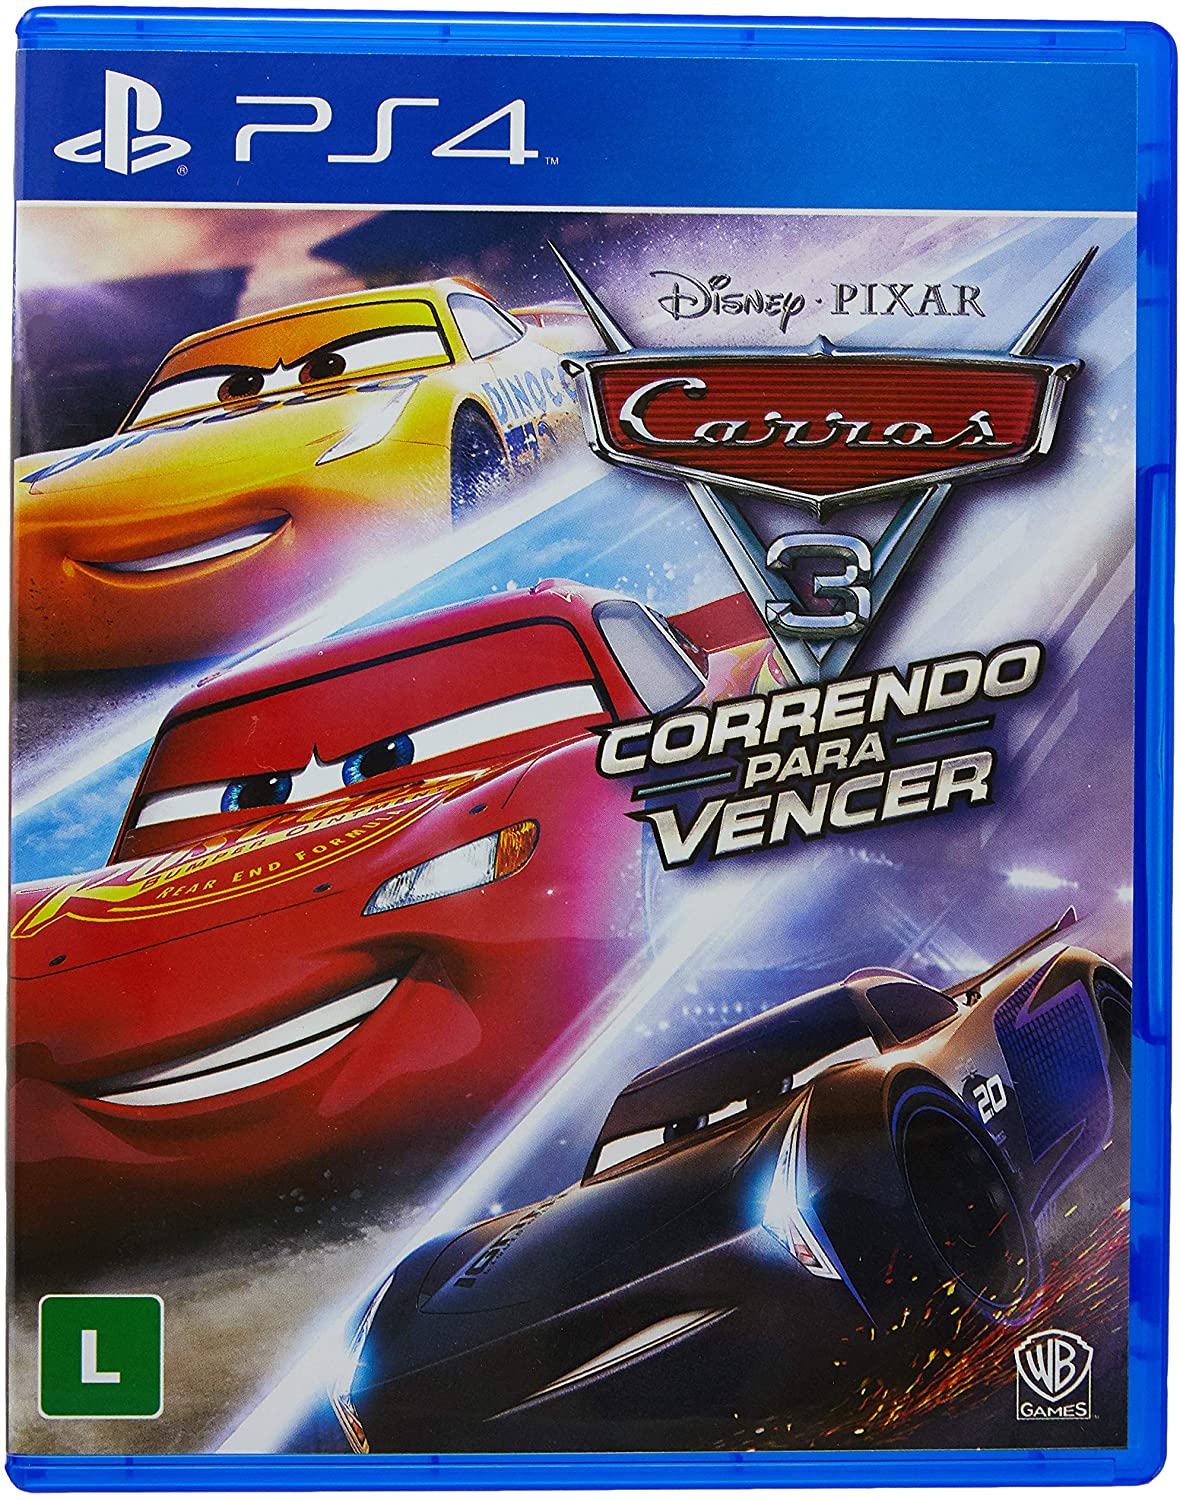 Jogo Carro 2 Mcqueen Xbox 360